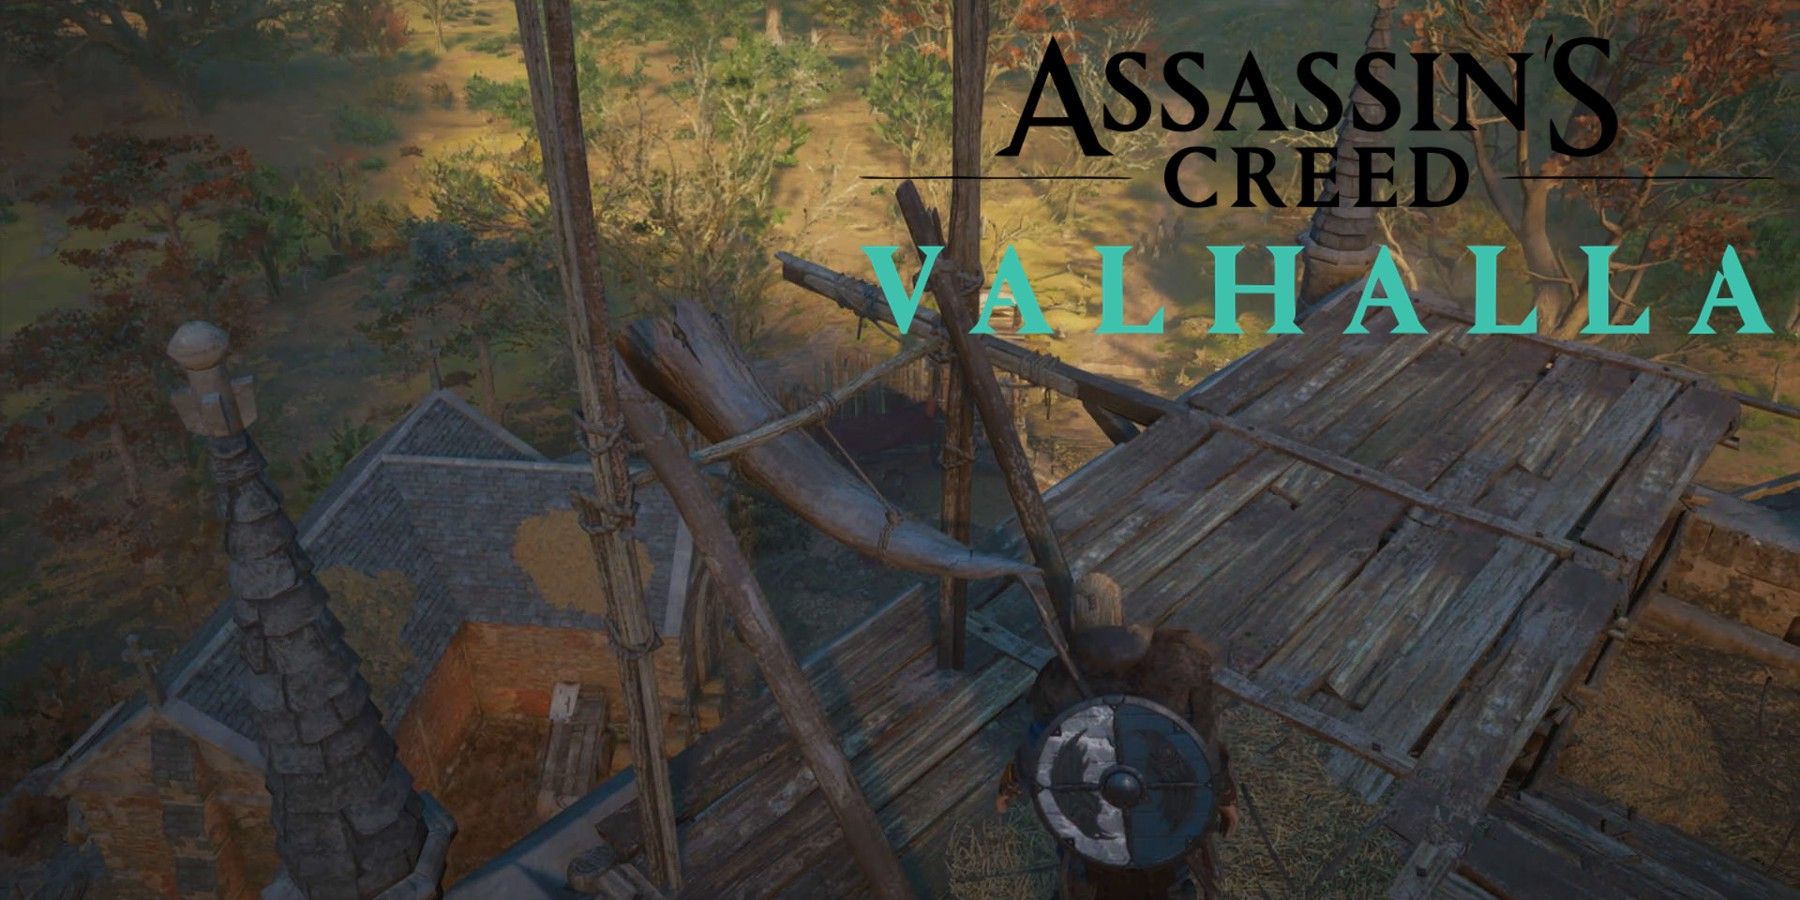 AC Valhalla: Dawn of Ragnarok Gameplay Walkthrough - Main Quest